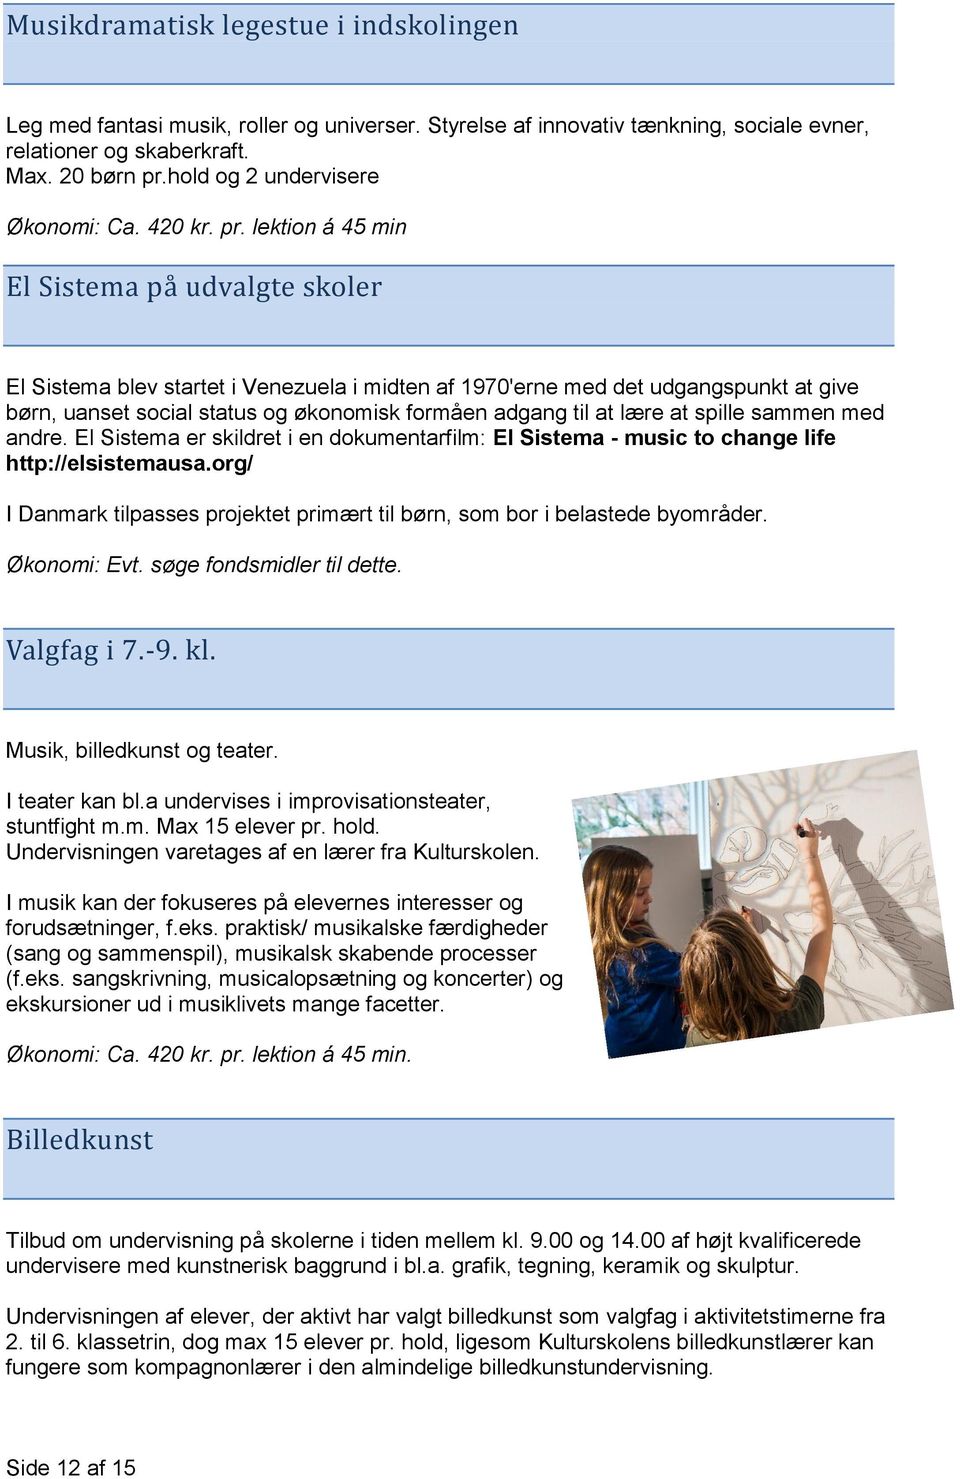 Esbjerg Kulturskole i den nye Folkeskole - PDF Gratis download